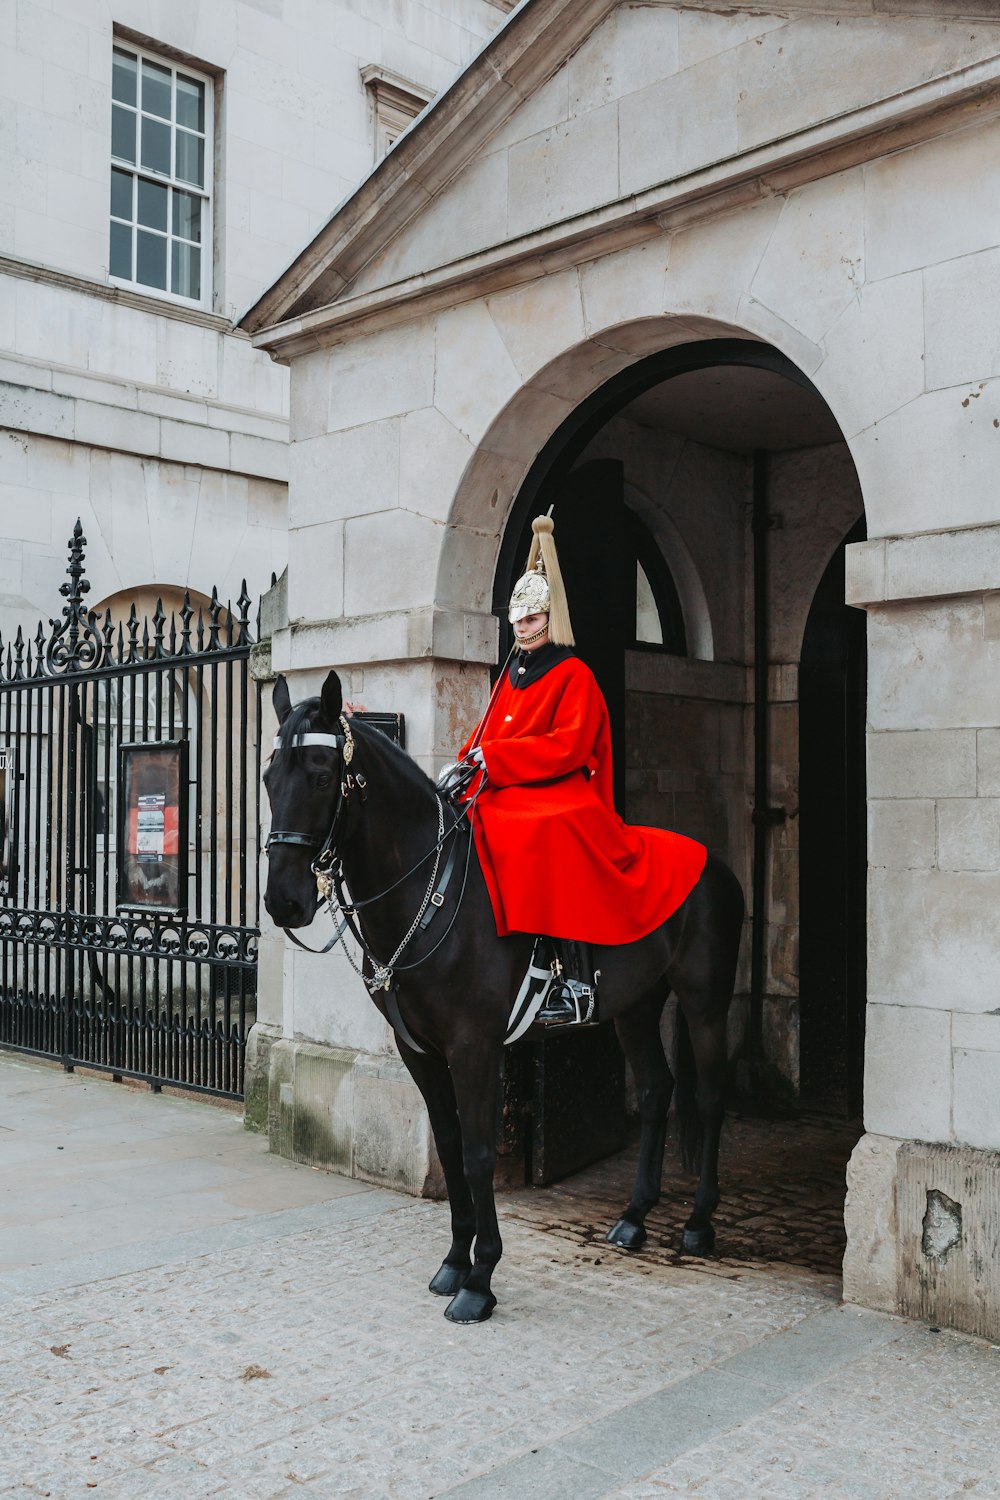 eine Person in einem roten Gewand, die auf einem schwarzen Pferd reitet, mit Horse Guards im Hintergrund